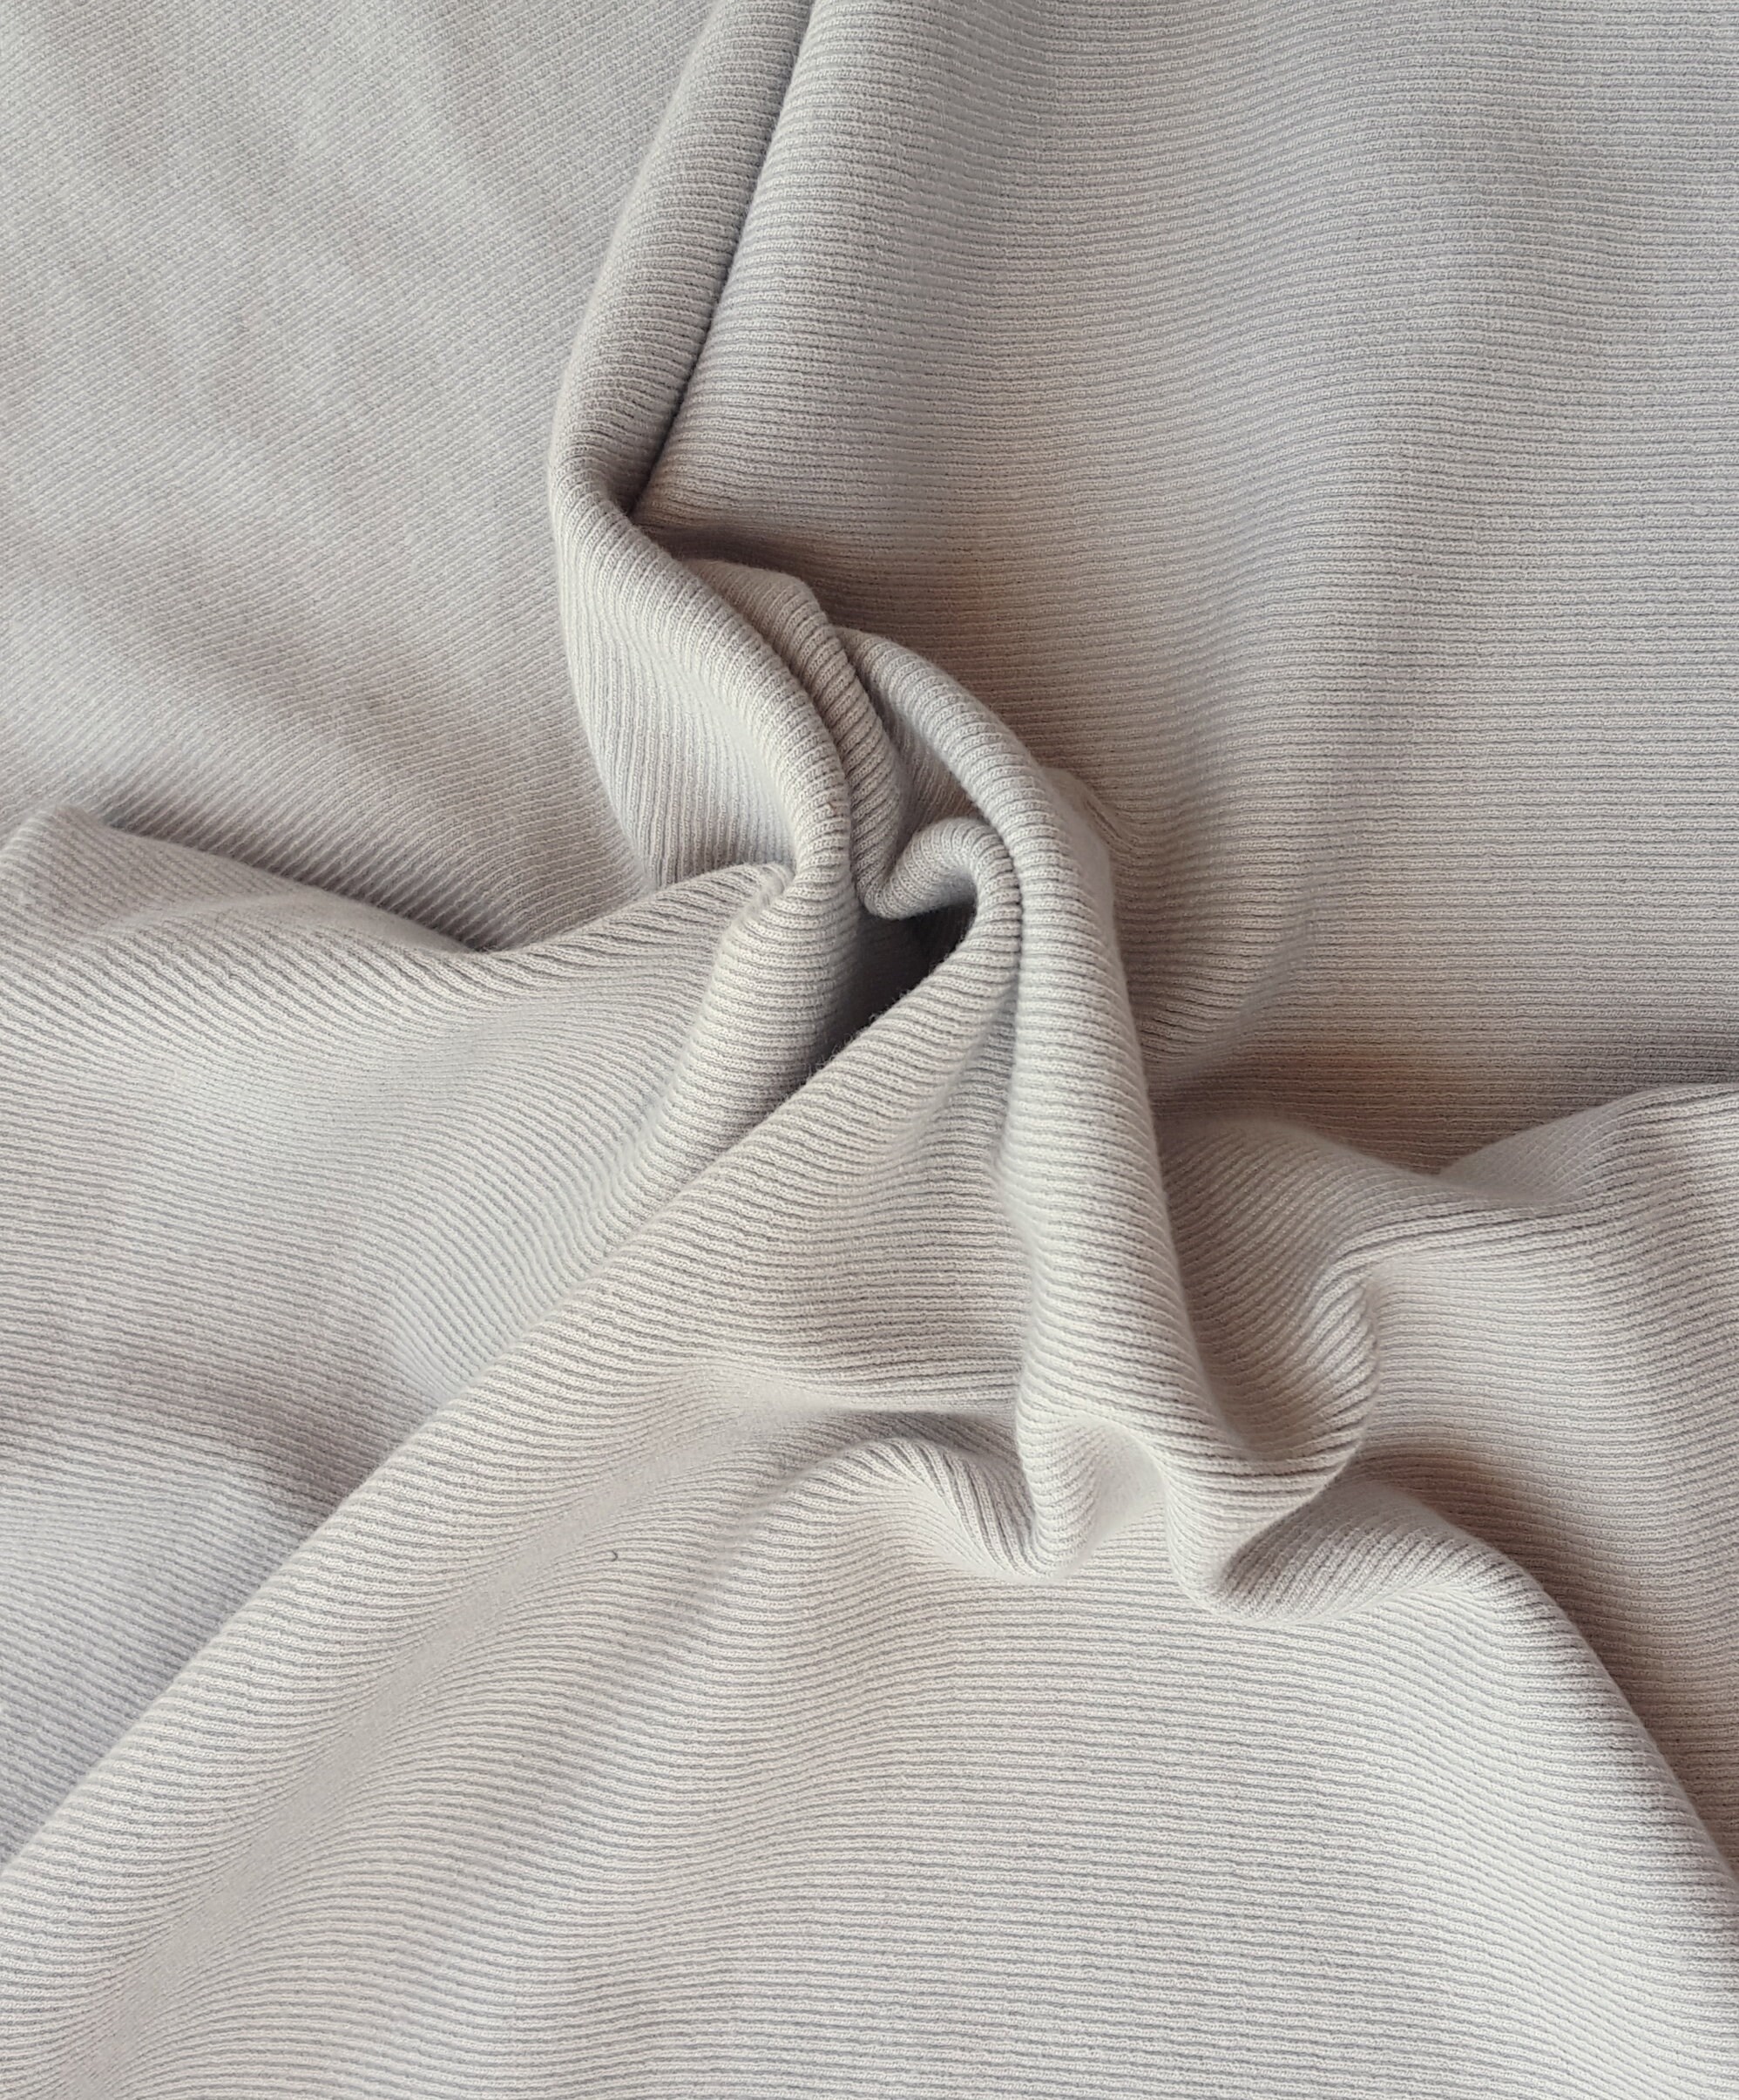 Zipper by the Yard - Papaya – Stitch Fabric Company